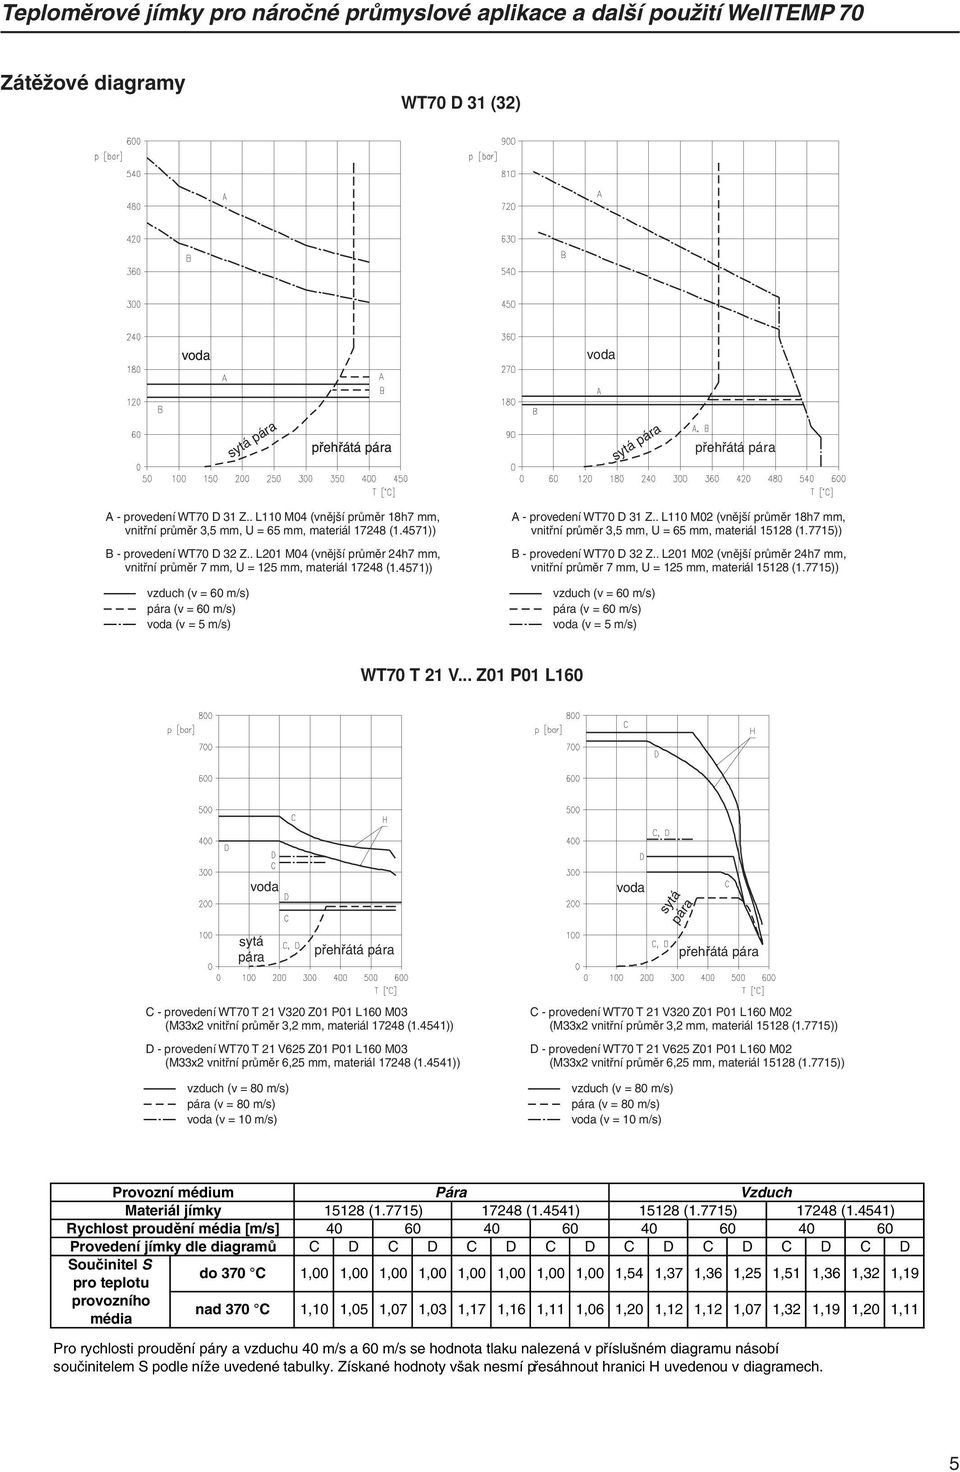 4571)) B - proveení WT70 D 32 Z.. 01 M04 (vnější průměr 24h7 mm, vnitřní průměr 7 mm, U = 5 mm, materiál 17248 ( 1.4571)) vzuch (v = 60 m/s) pára (v = 60 m/s) voa (v = 5 m/s) A - proveení WT70 D 31 Z.